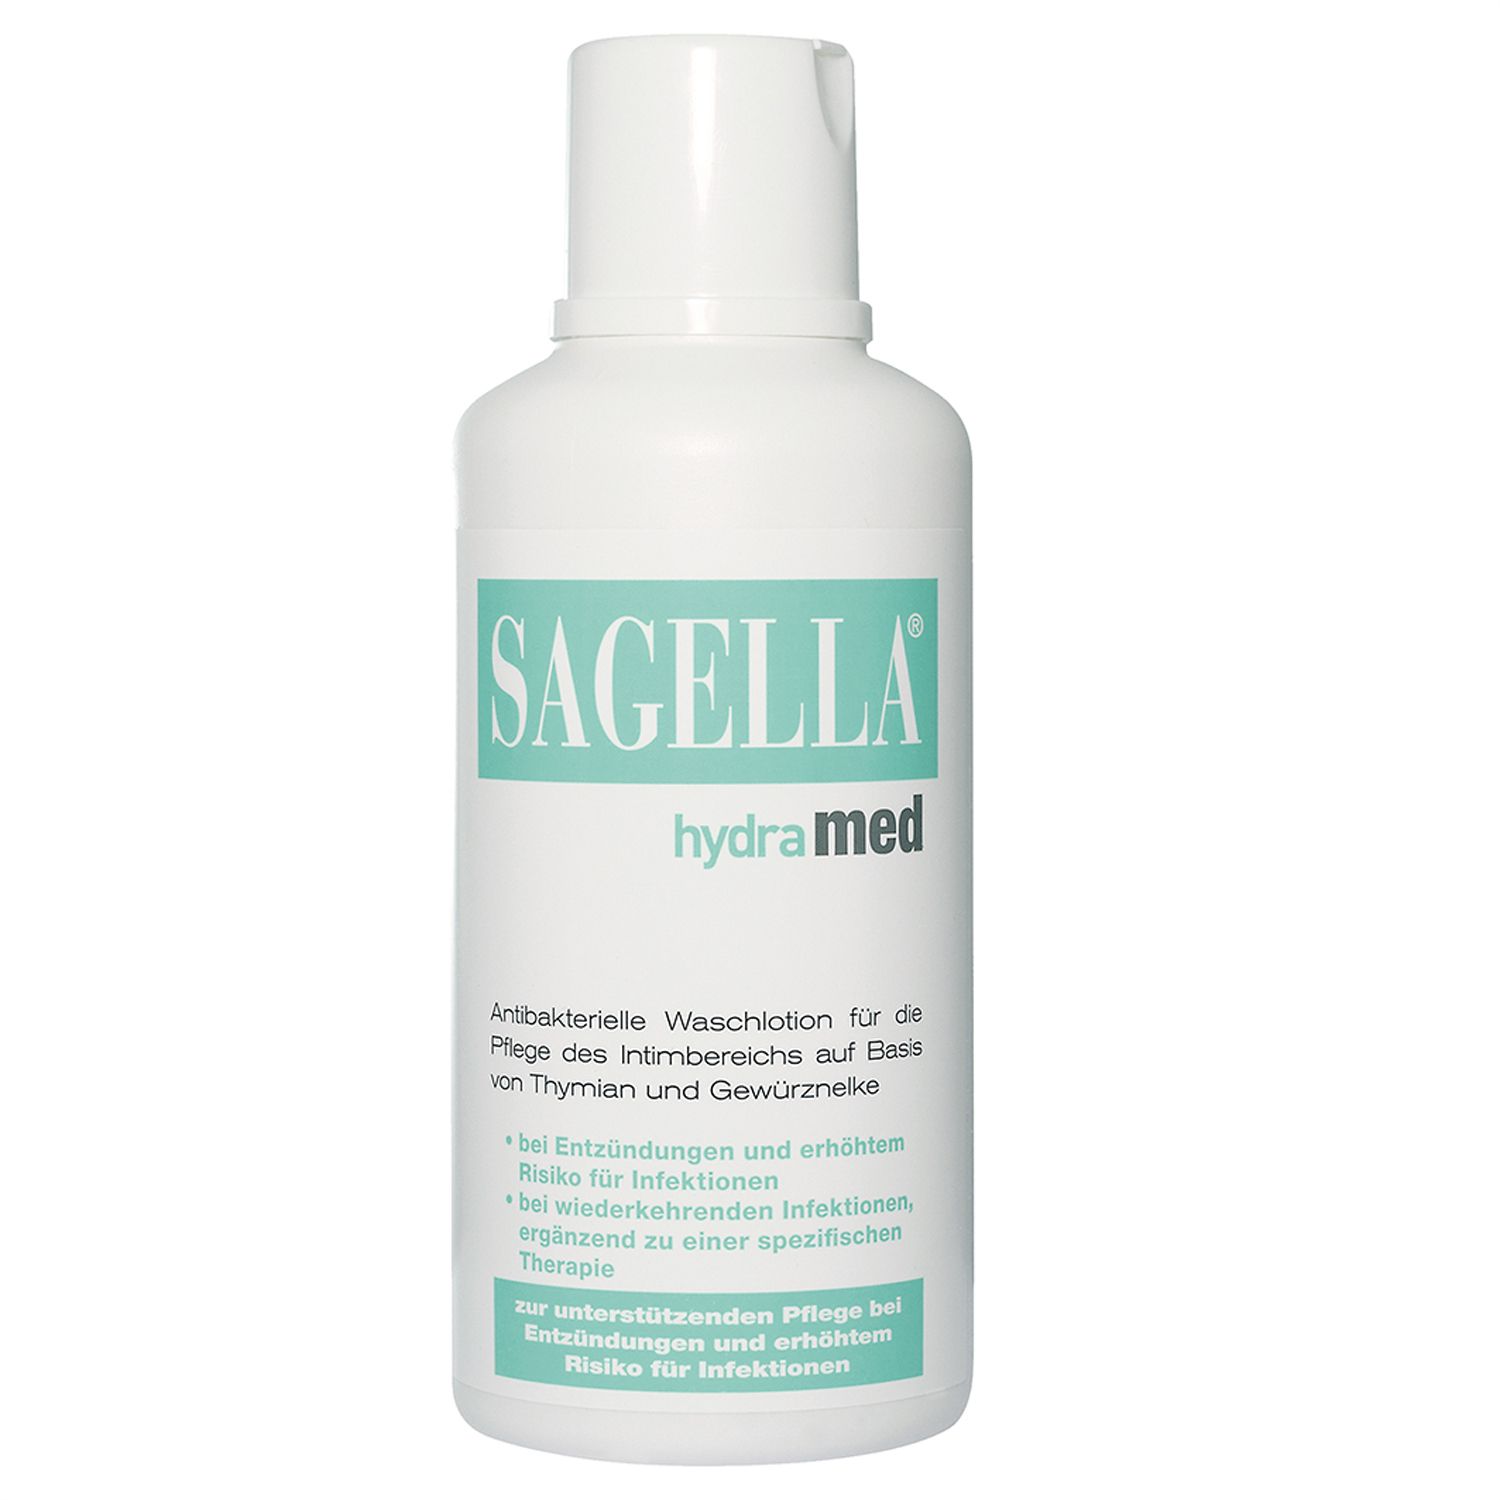 SAGELLA® hydramed